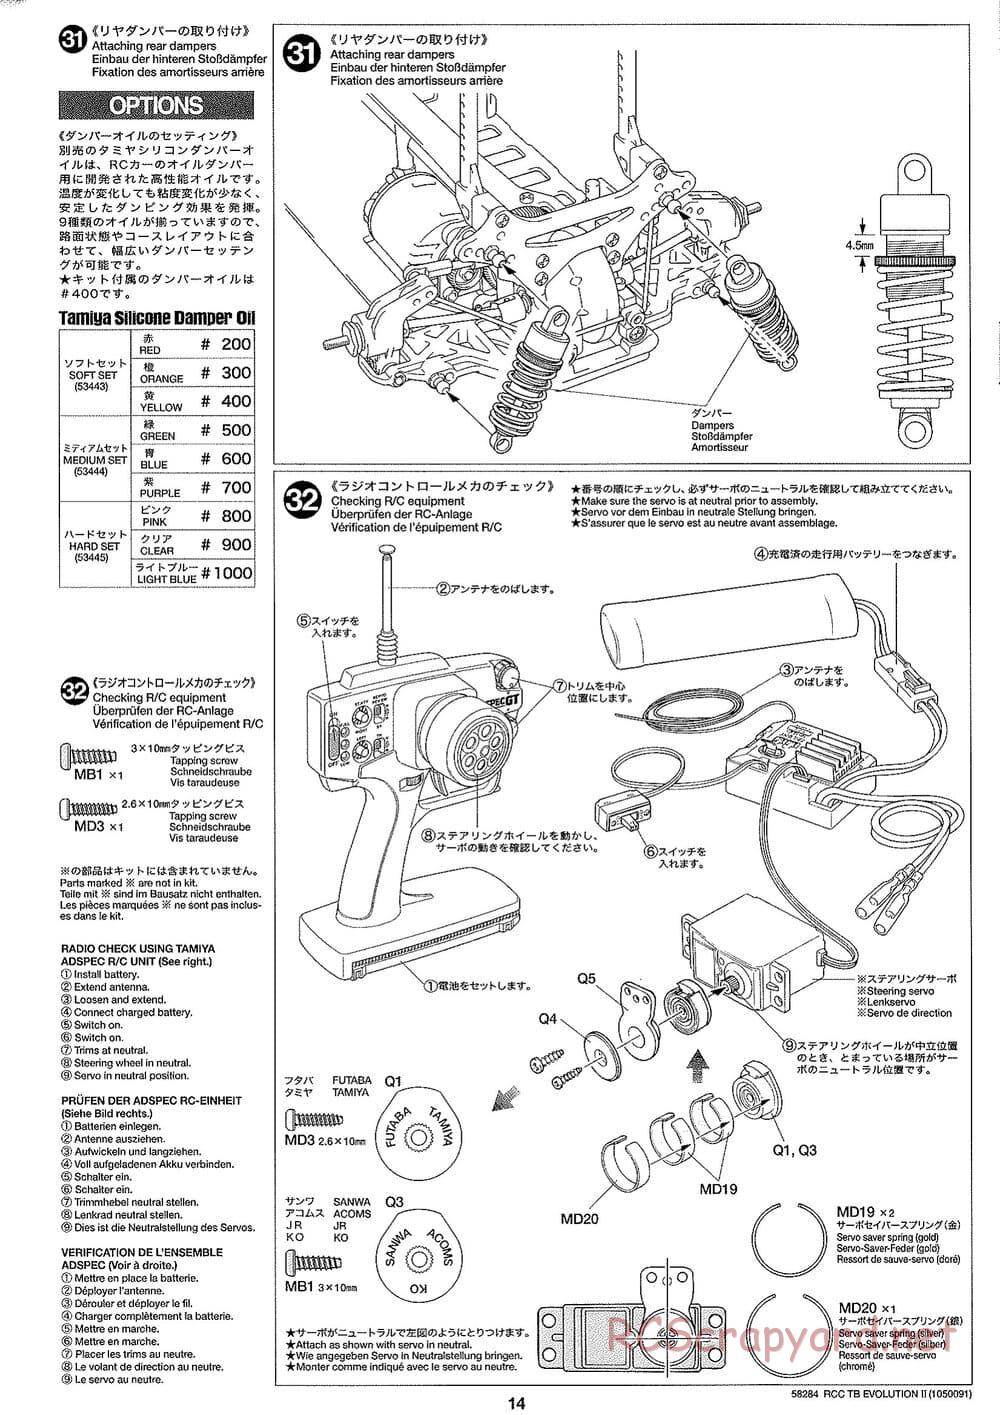 Tamiya - TB Evolution II Chassis - Manual - Page 14